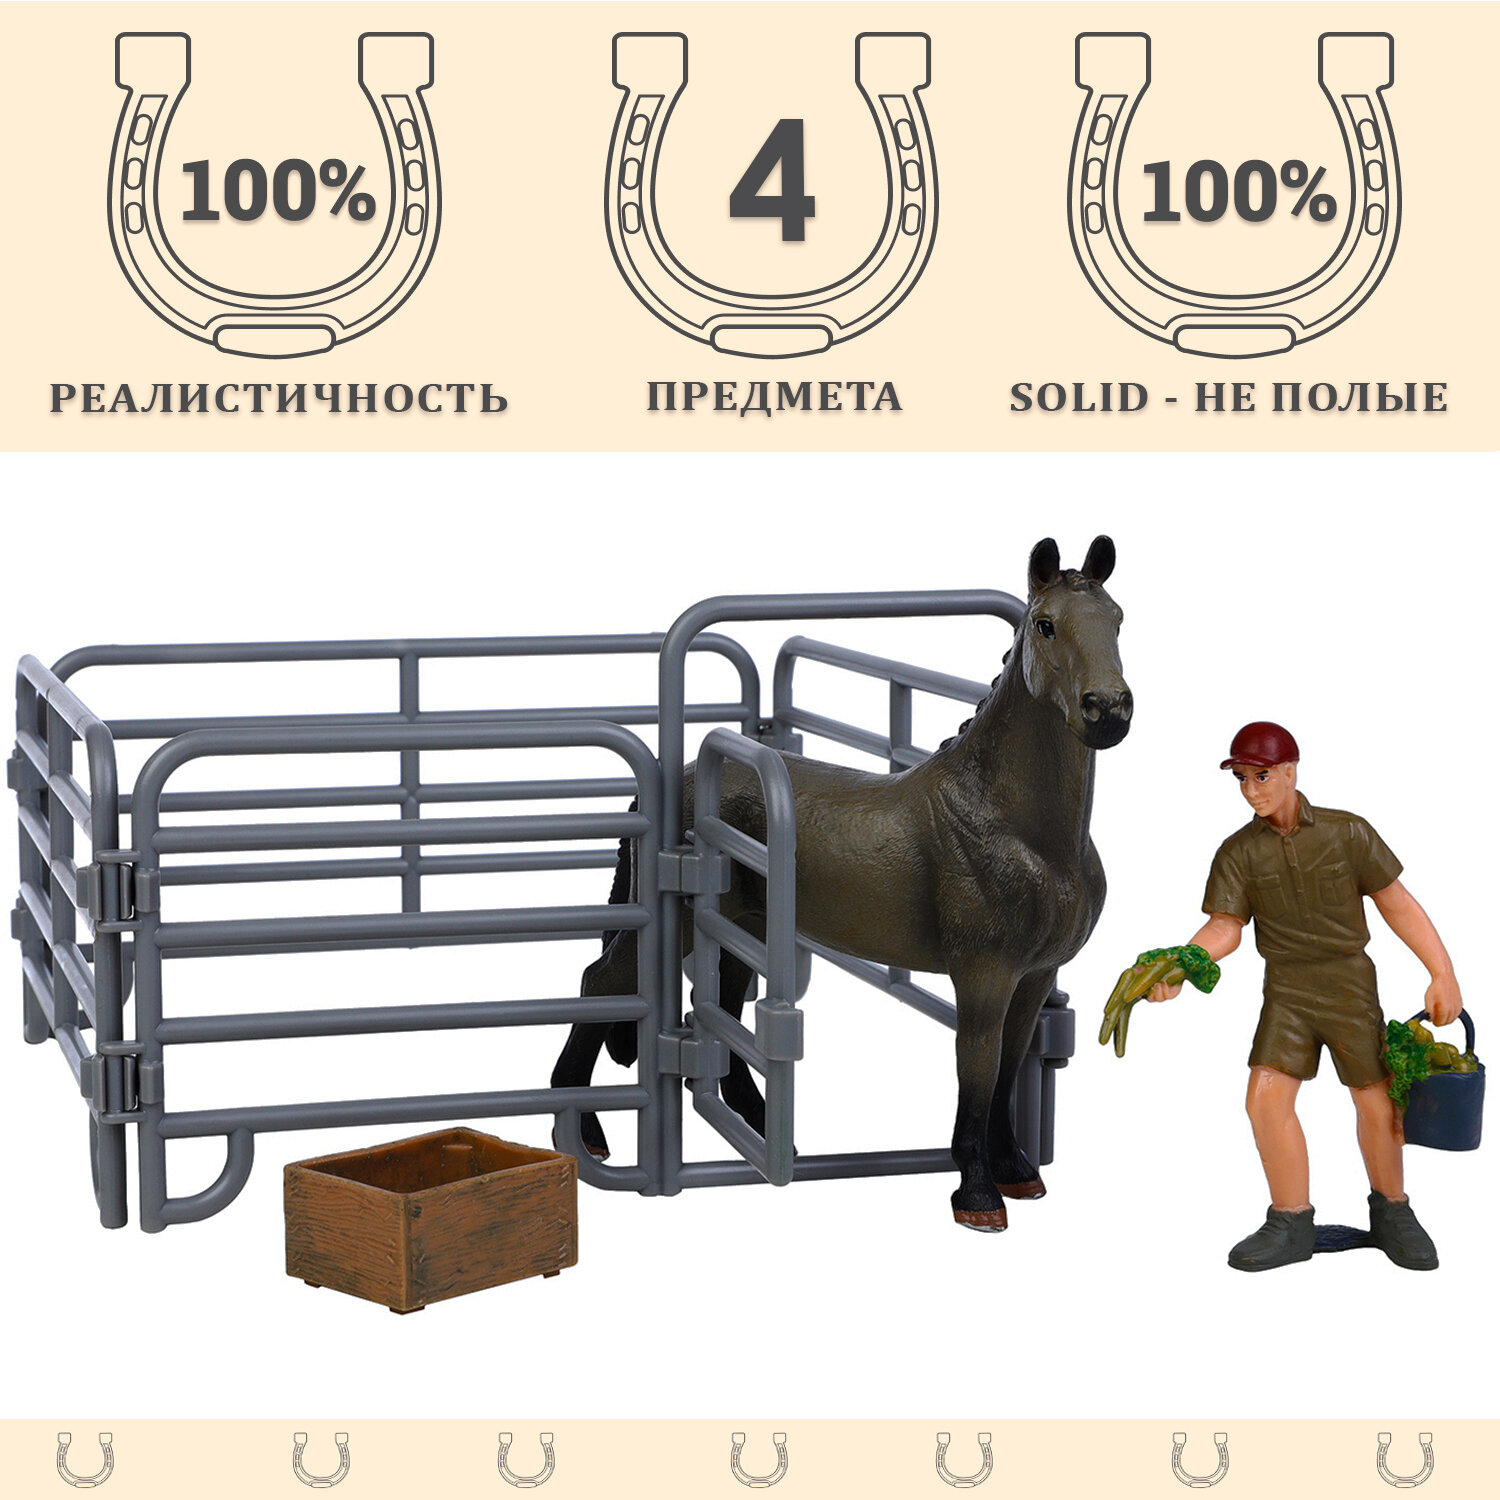 Фигурки животных серии "Мир лошадей": Лошадь, фермер, ограждение, кормушка с овощами (набор из 4 предметов)